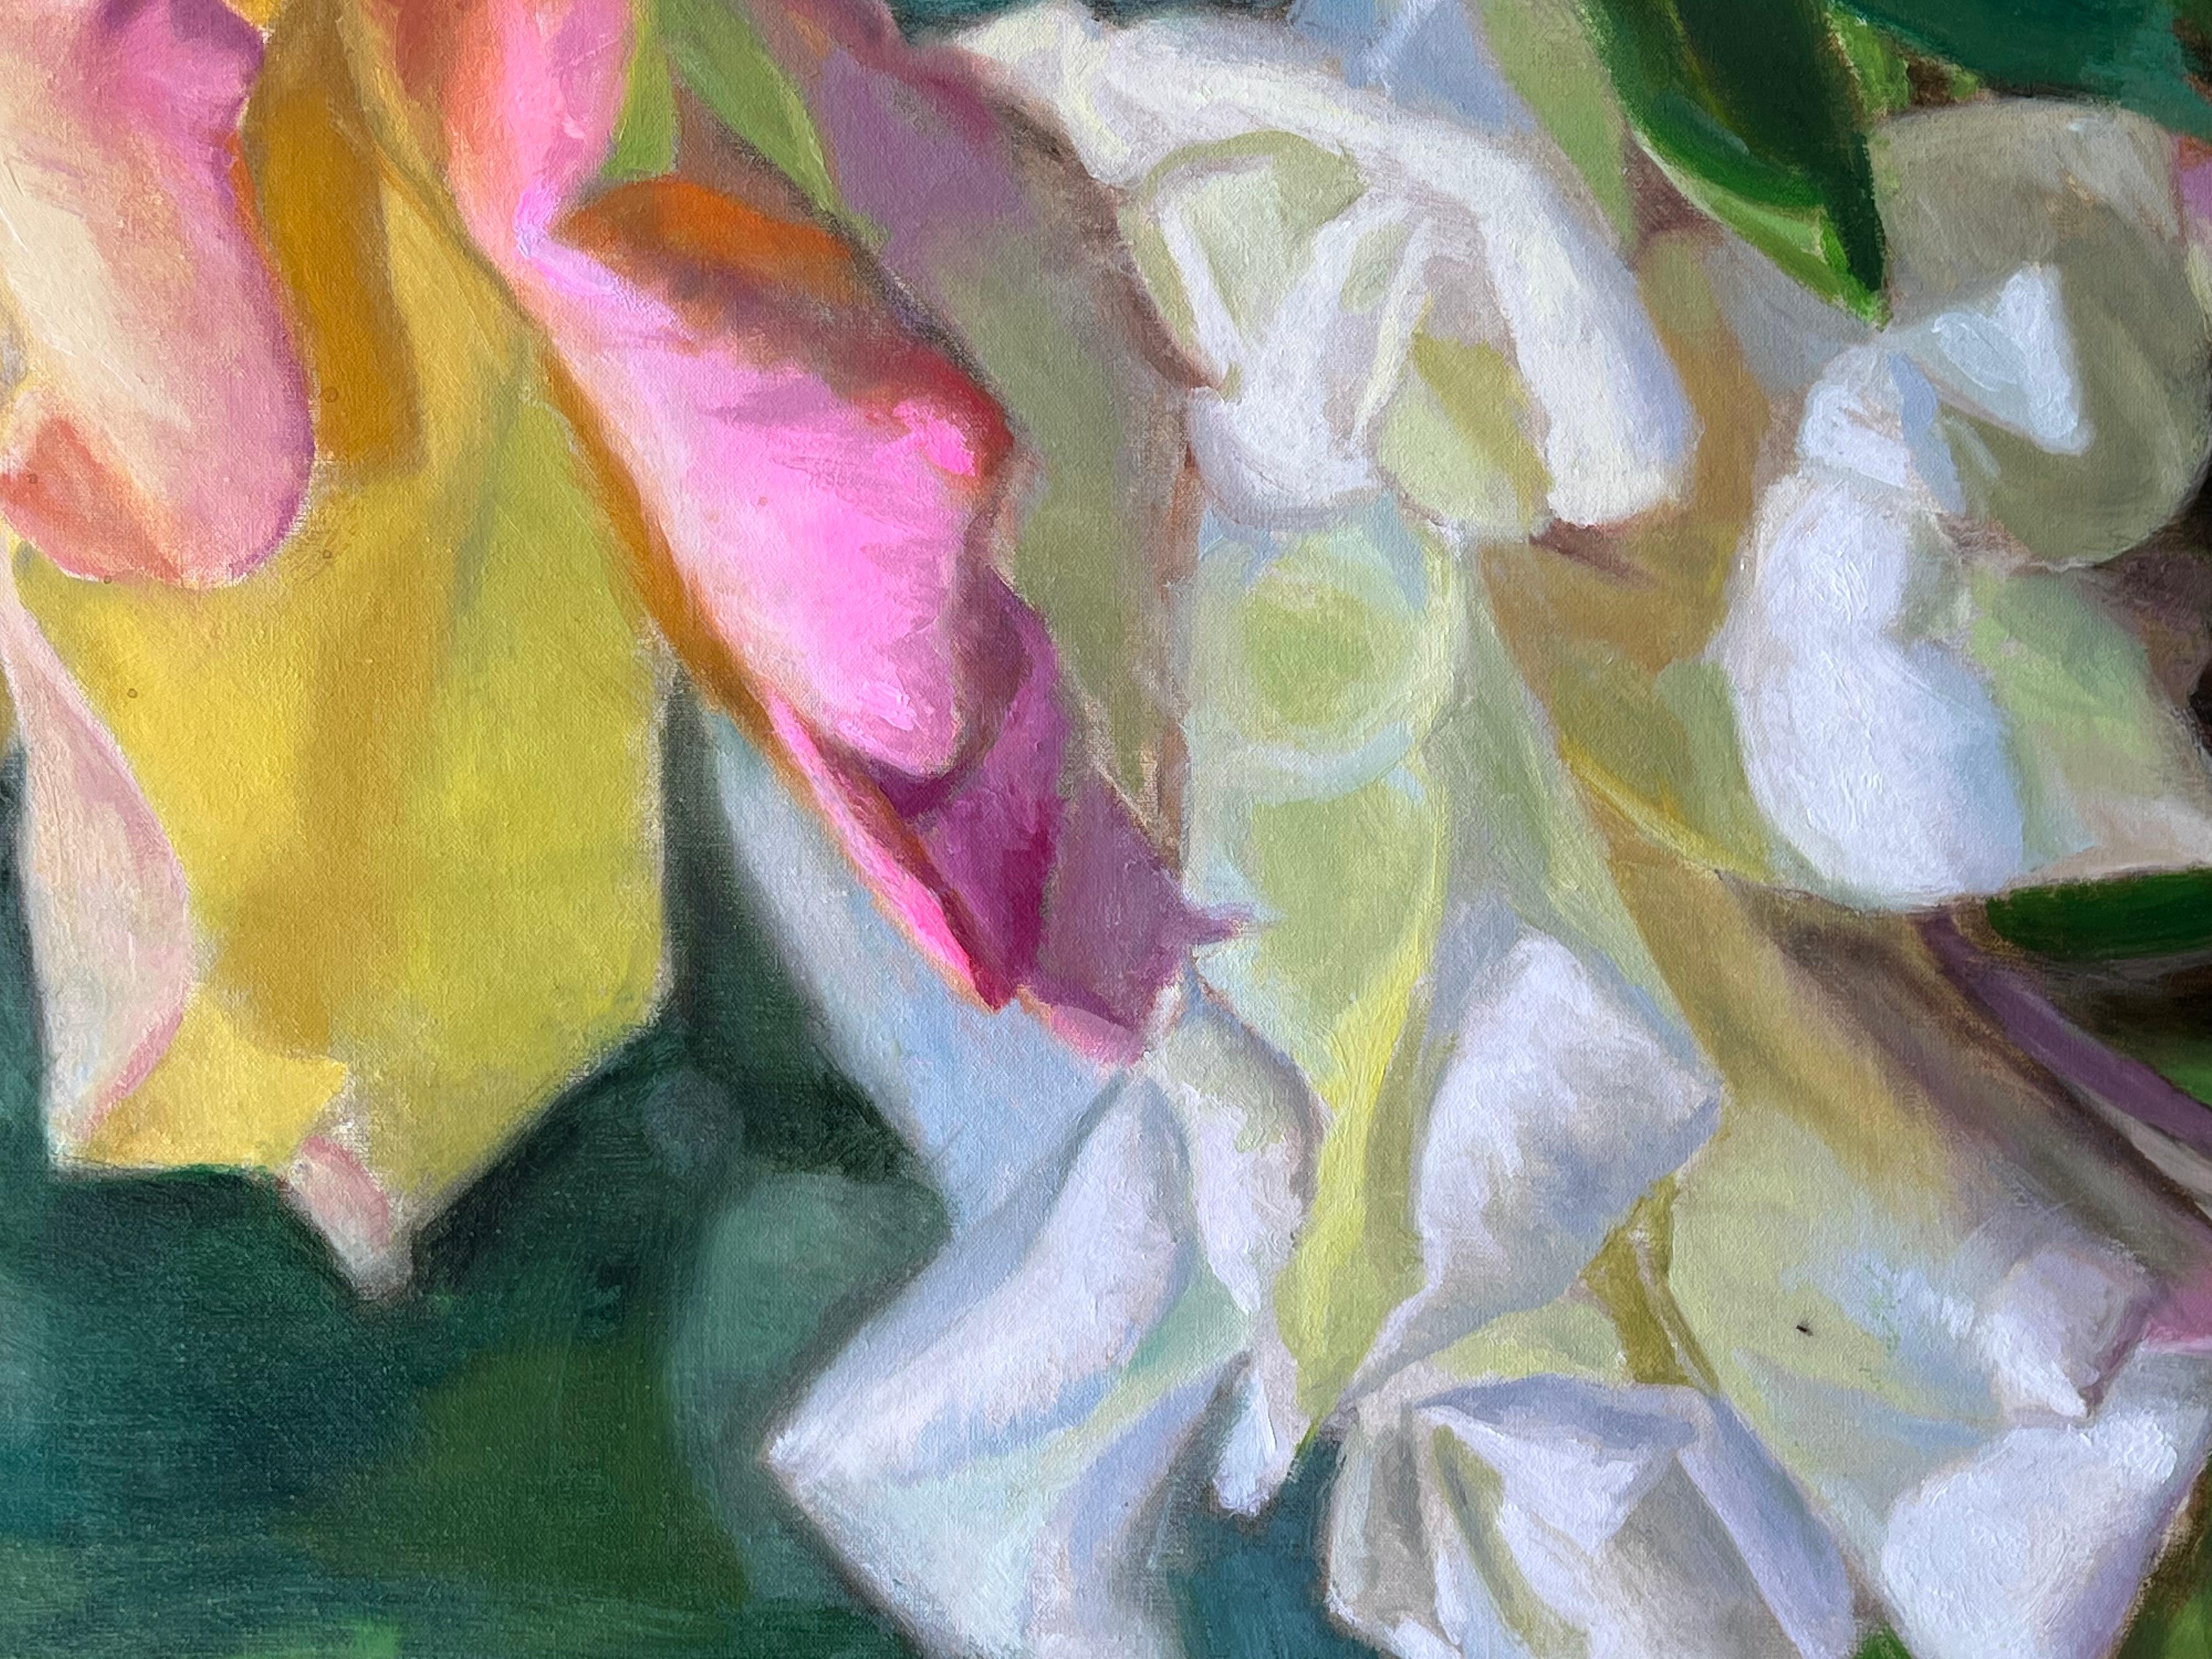 <p>Kommentare des Künstlers<br>Das Gemälde zeigt eine zarte gelbe Rose mit rosafarbenen Rändern an den Blütenblättern und eine weiße Blume, die anmutig im Hintergrund blüht. Das umgebende grüne Laub verleiht dem Stück einen Hauch von natürlicher